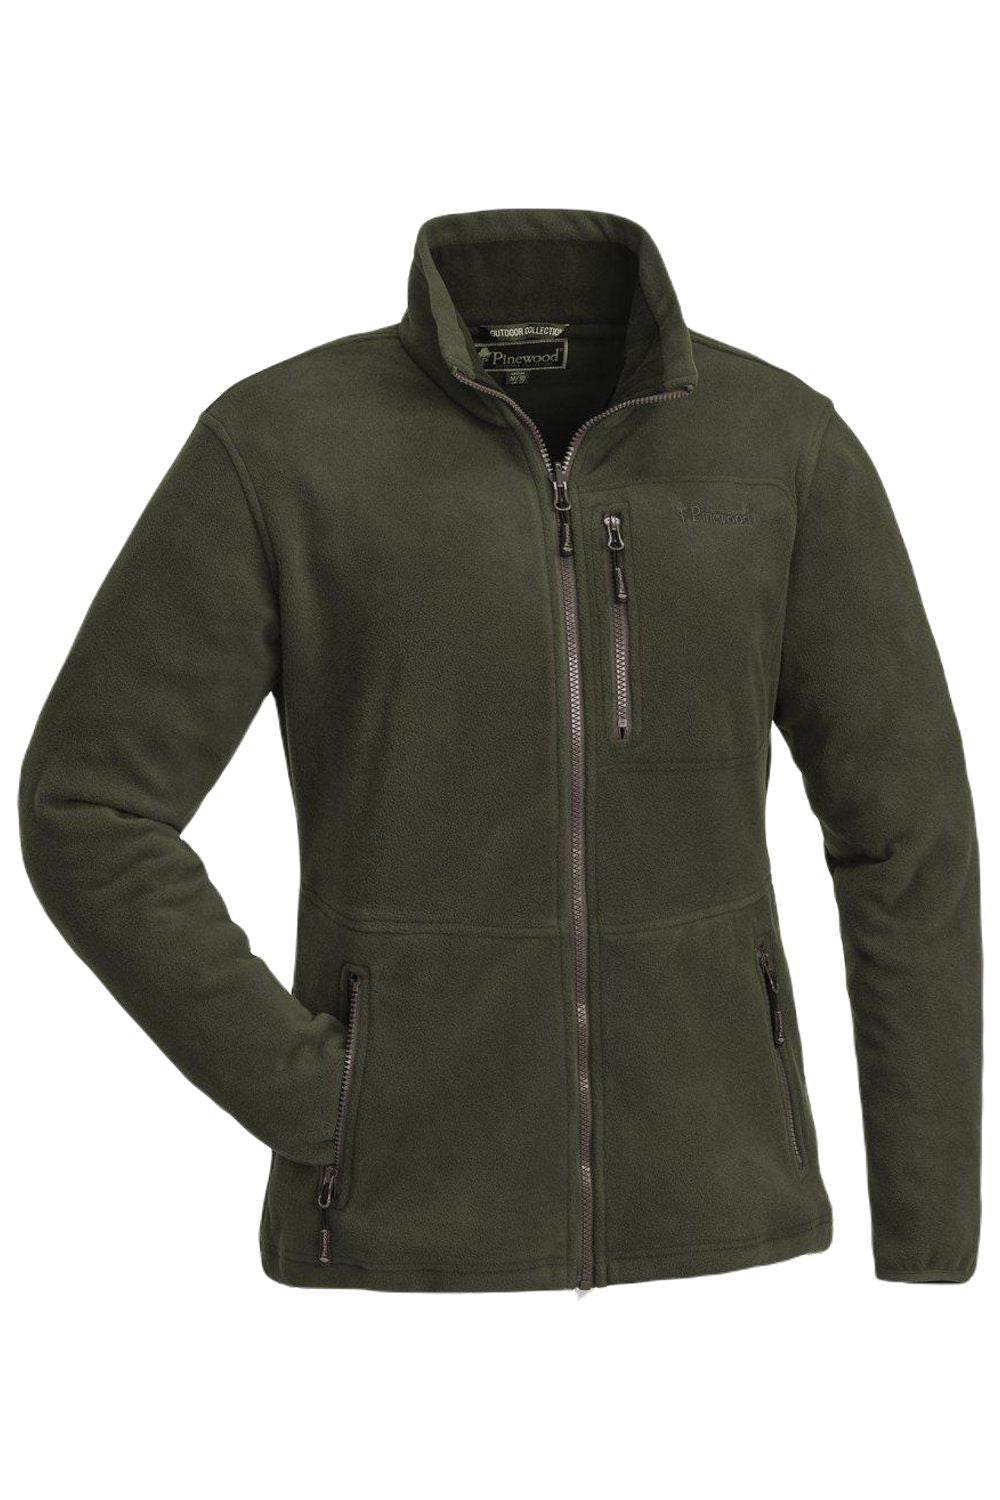 Pinewood Womens Finnveden Fleece Jacket In Green 